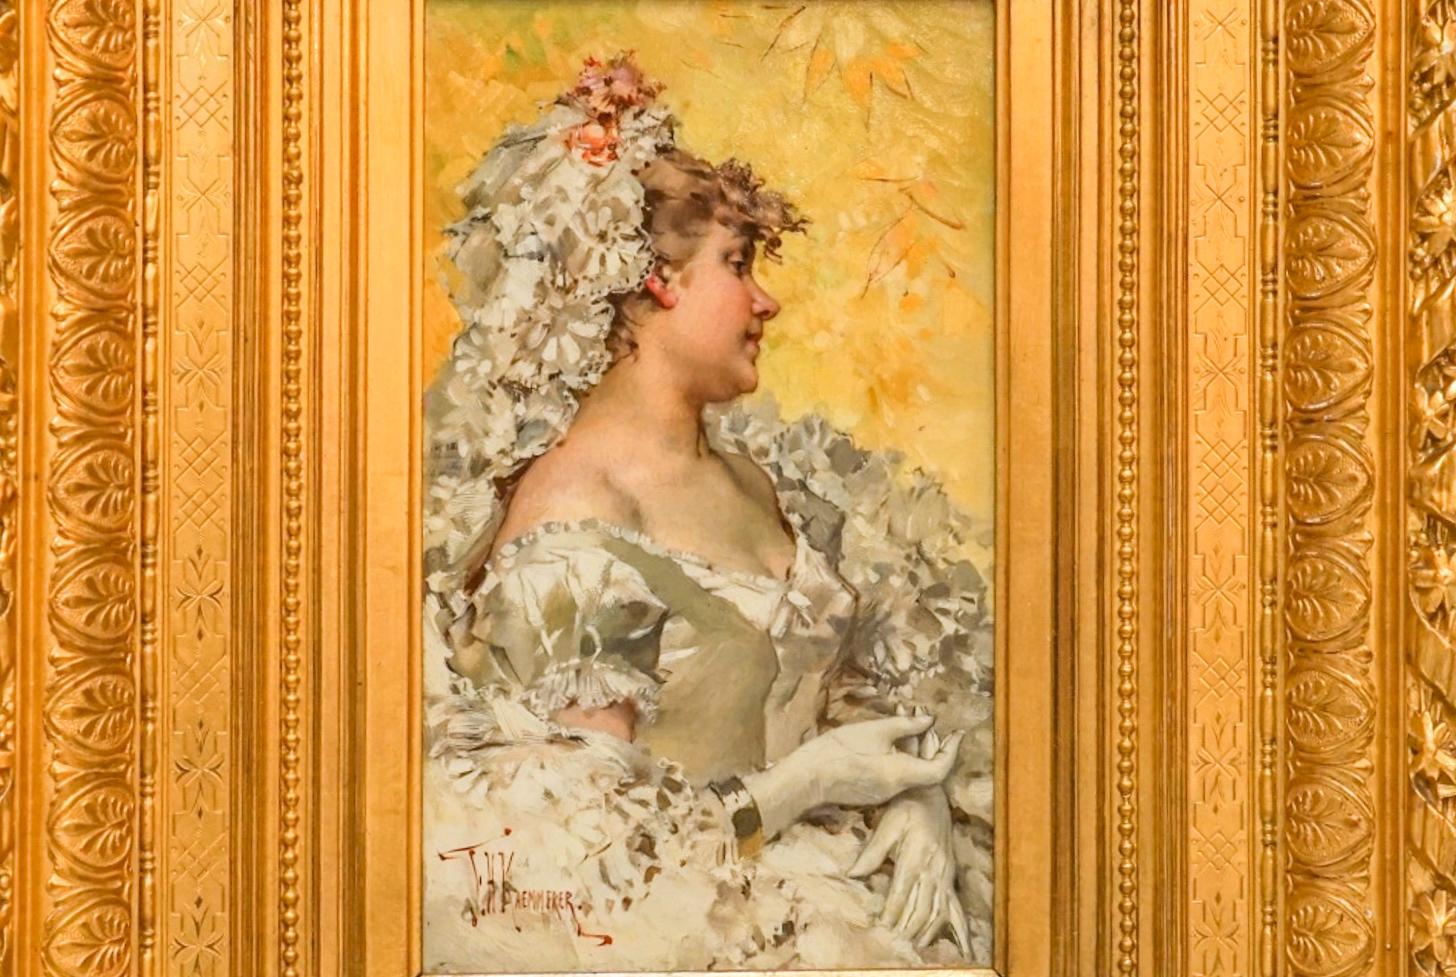 Belle Epoque Bride in White Dress - Painting by Frederick Hendrik Kaemmerer